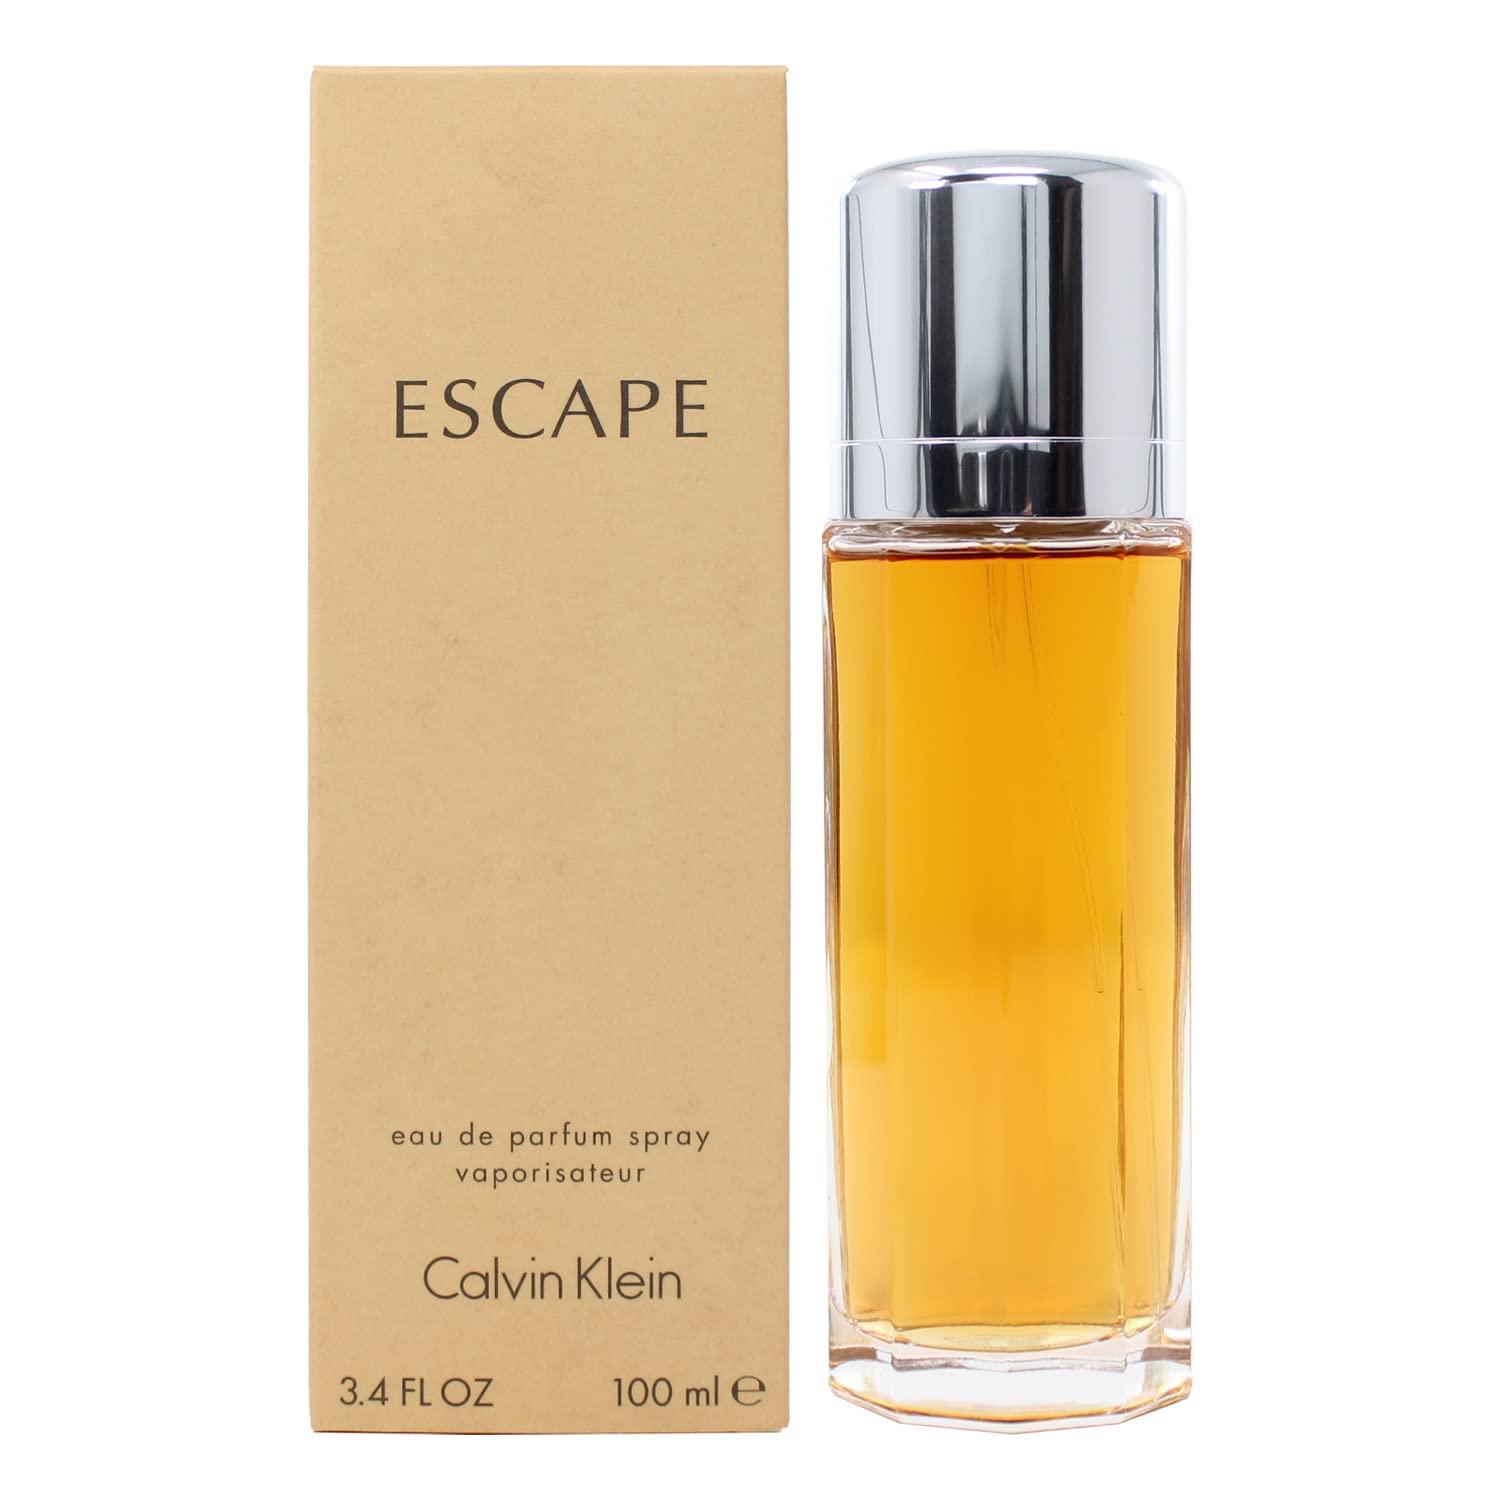 ESCAPE by CK Perfume for Women 3.4 oz Eau de Parfum Spray